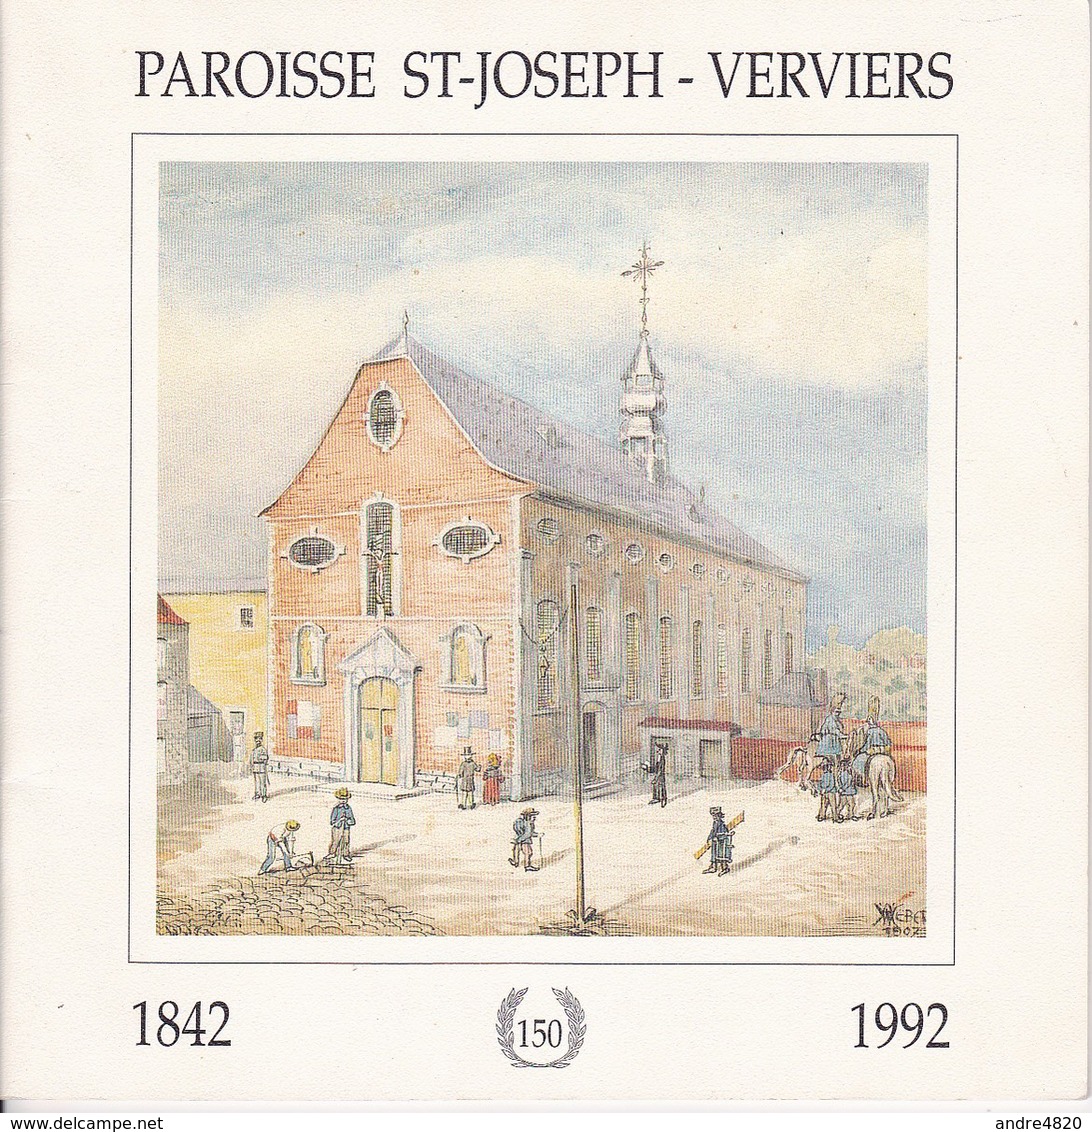 Paroisse St-Joseph – Verviers 150 Ans (1842-1992) - Belgique